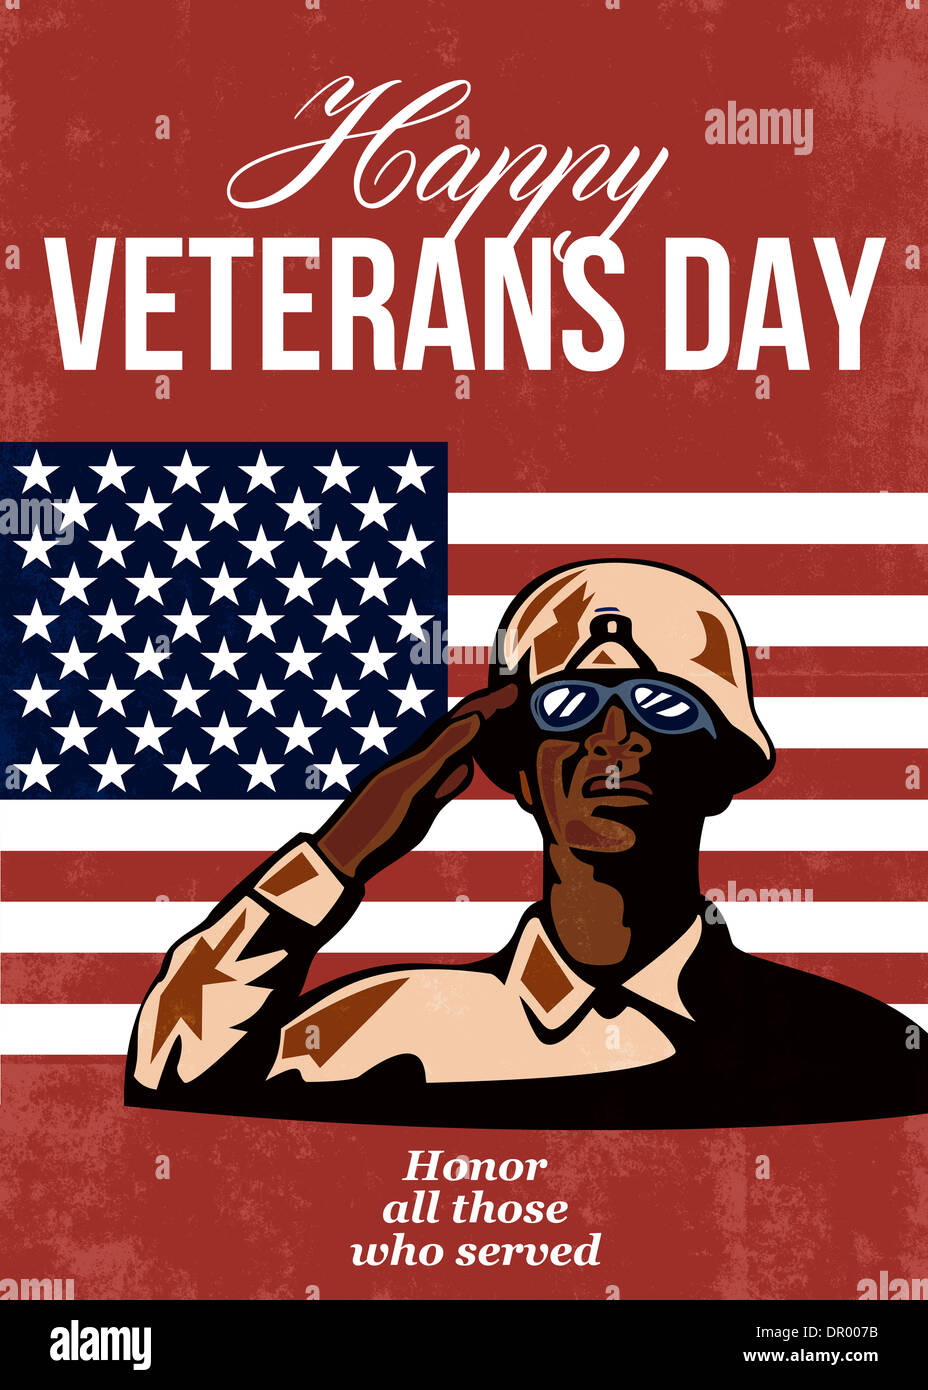 Gruß Karte Plakat zeigt Abbildung der Afro-Amerikaner Soldat Soldaten salutieren mit Sternen und Streifen-Flagge im Hintergrund glücklich Veterans Day zu Ehren wer serviert. Stockfoto